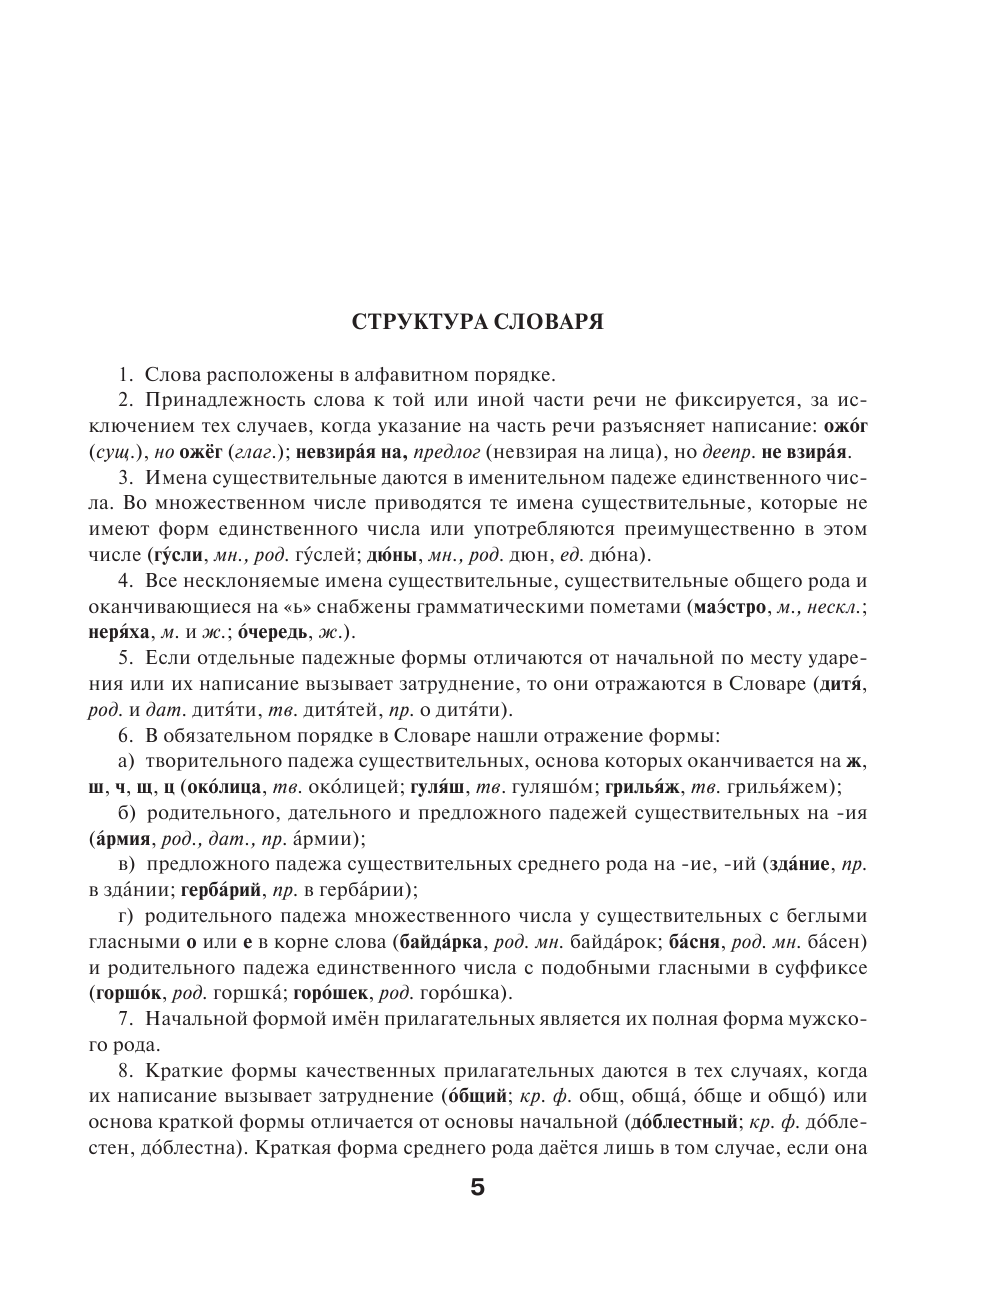  Орфографический словарь русского языка для школьников 5-11 классов - страница 4